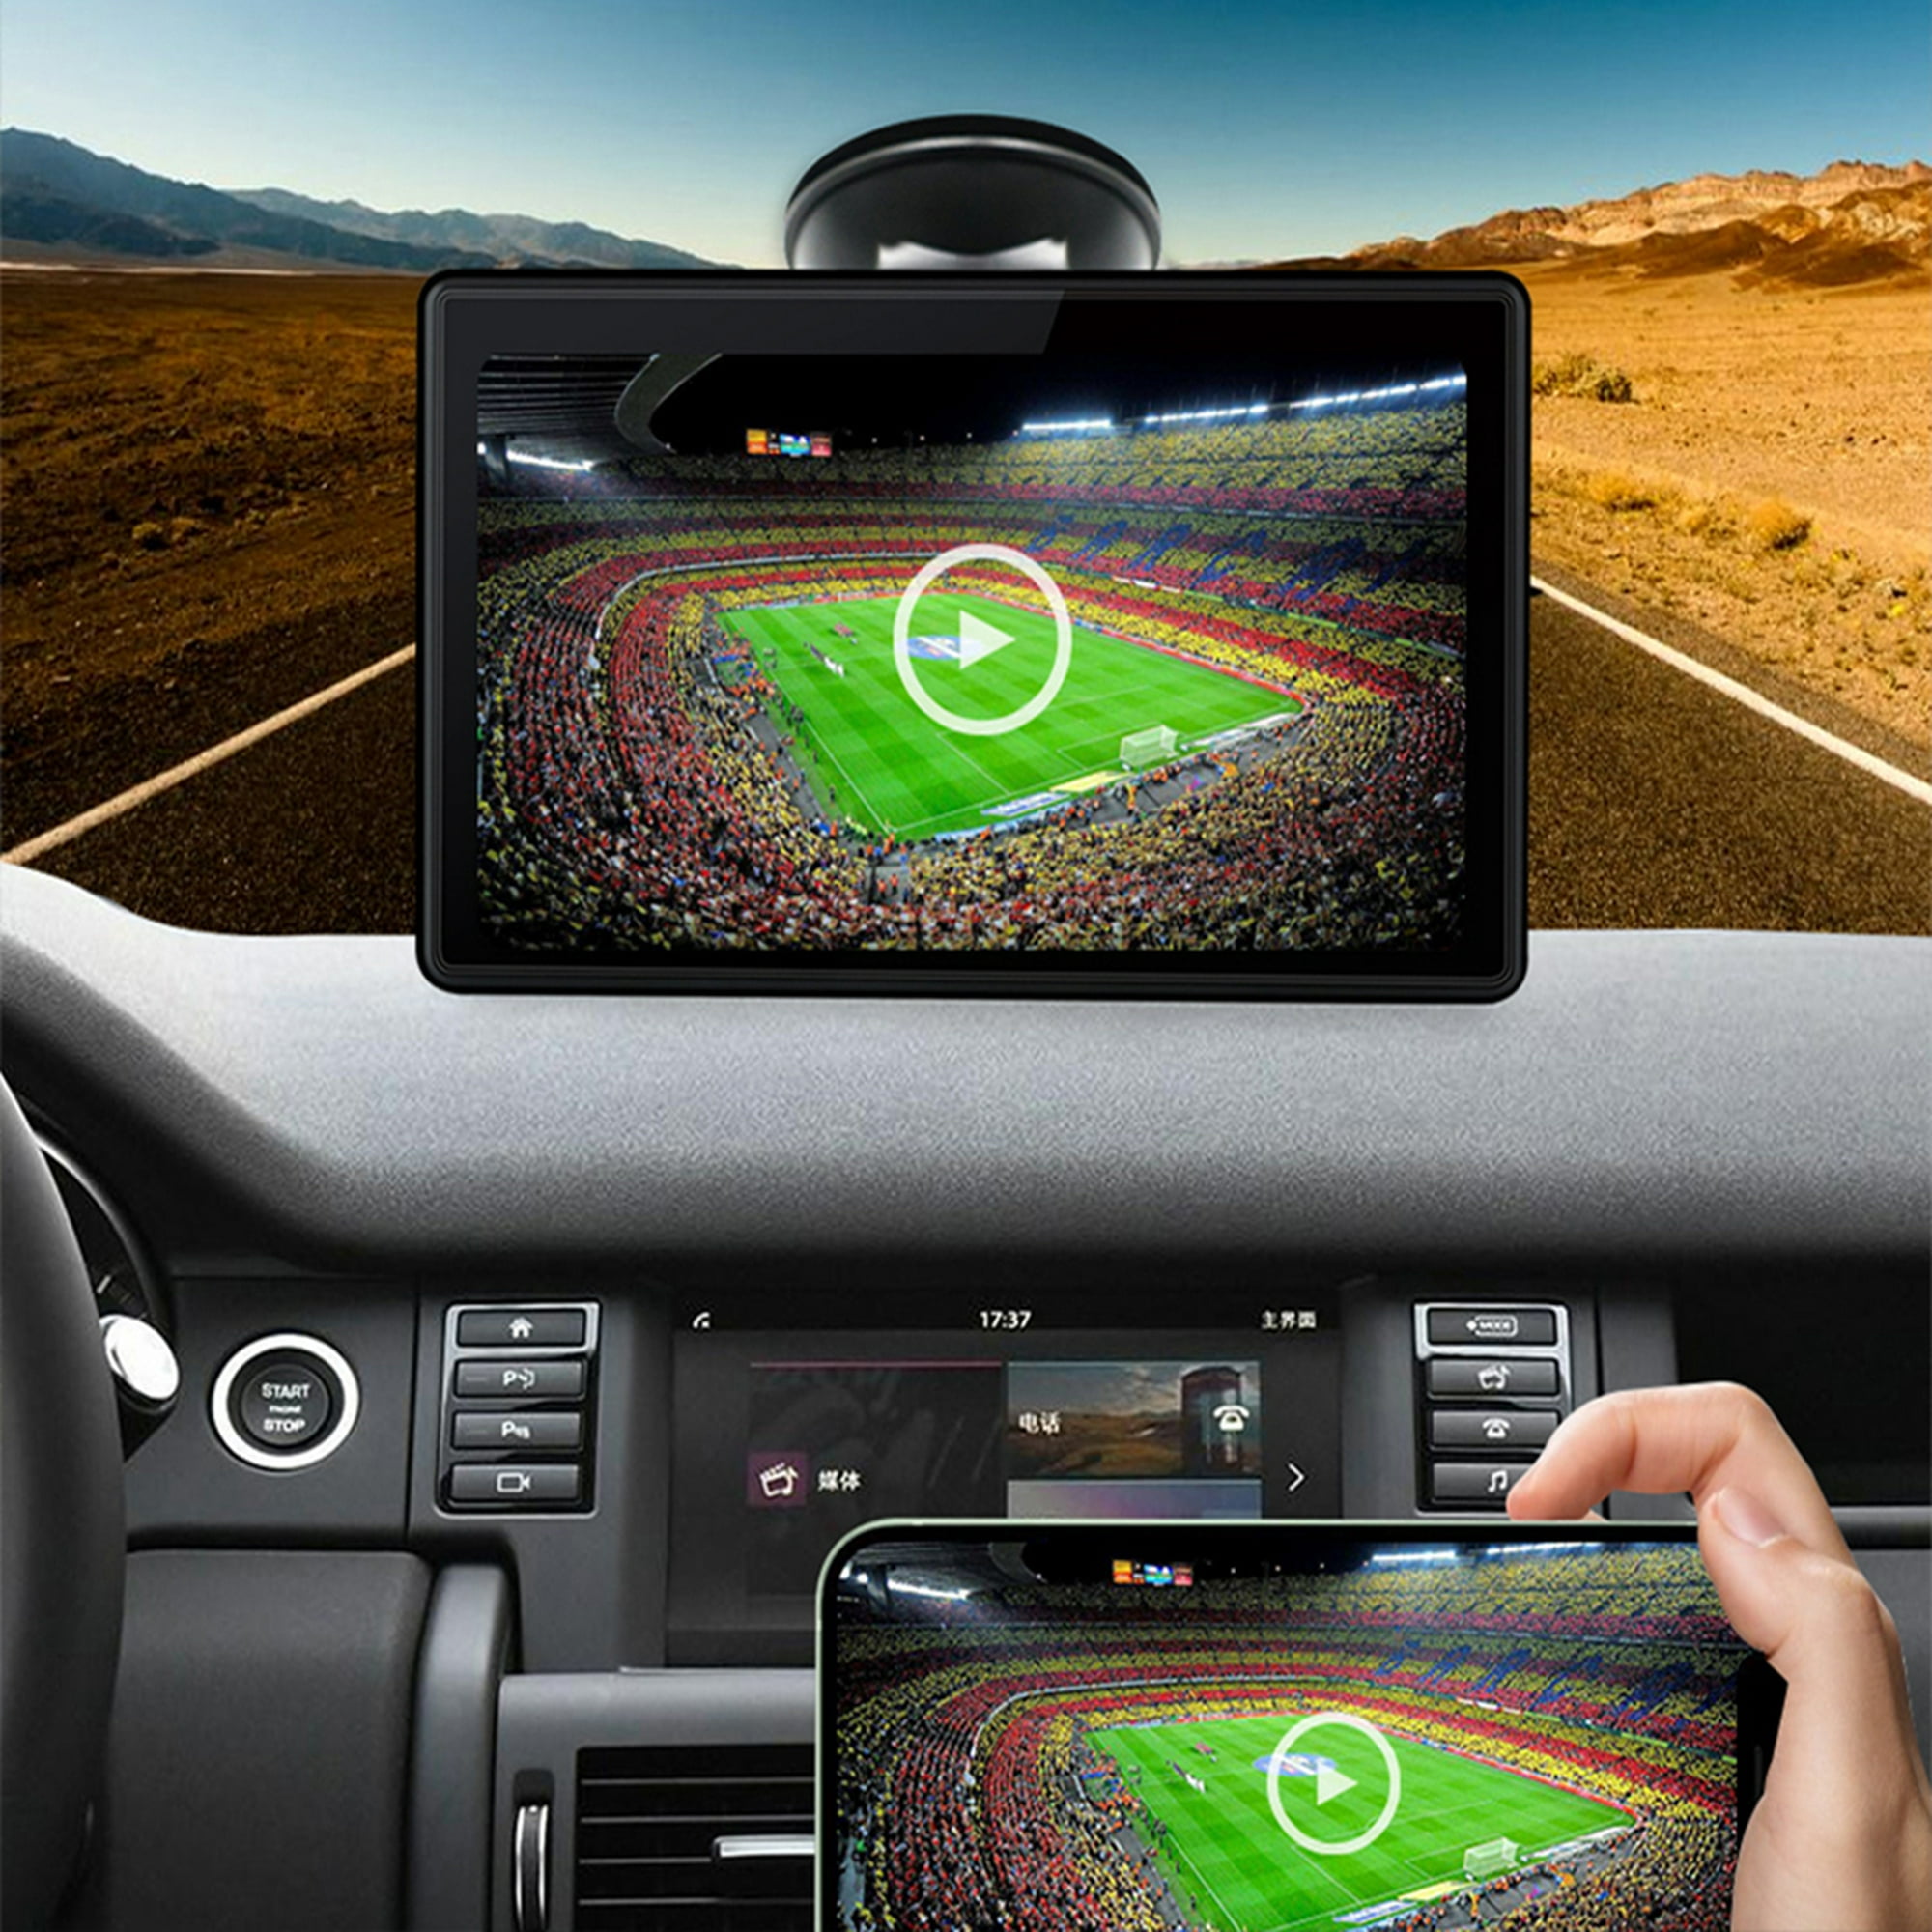 Radio De Coche Universal Car Radio Bluetooth-compatible Car Radio Video  Player Auto Accesorios Sywqhk Accesorios para autos y motos